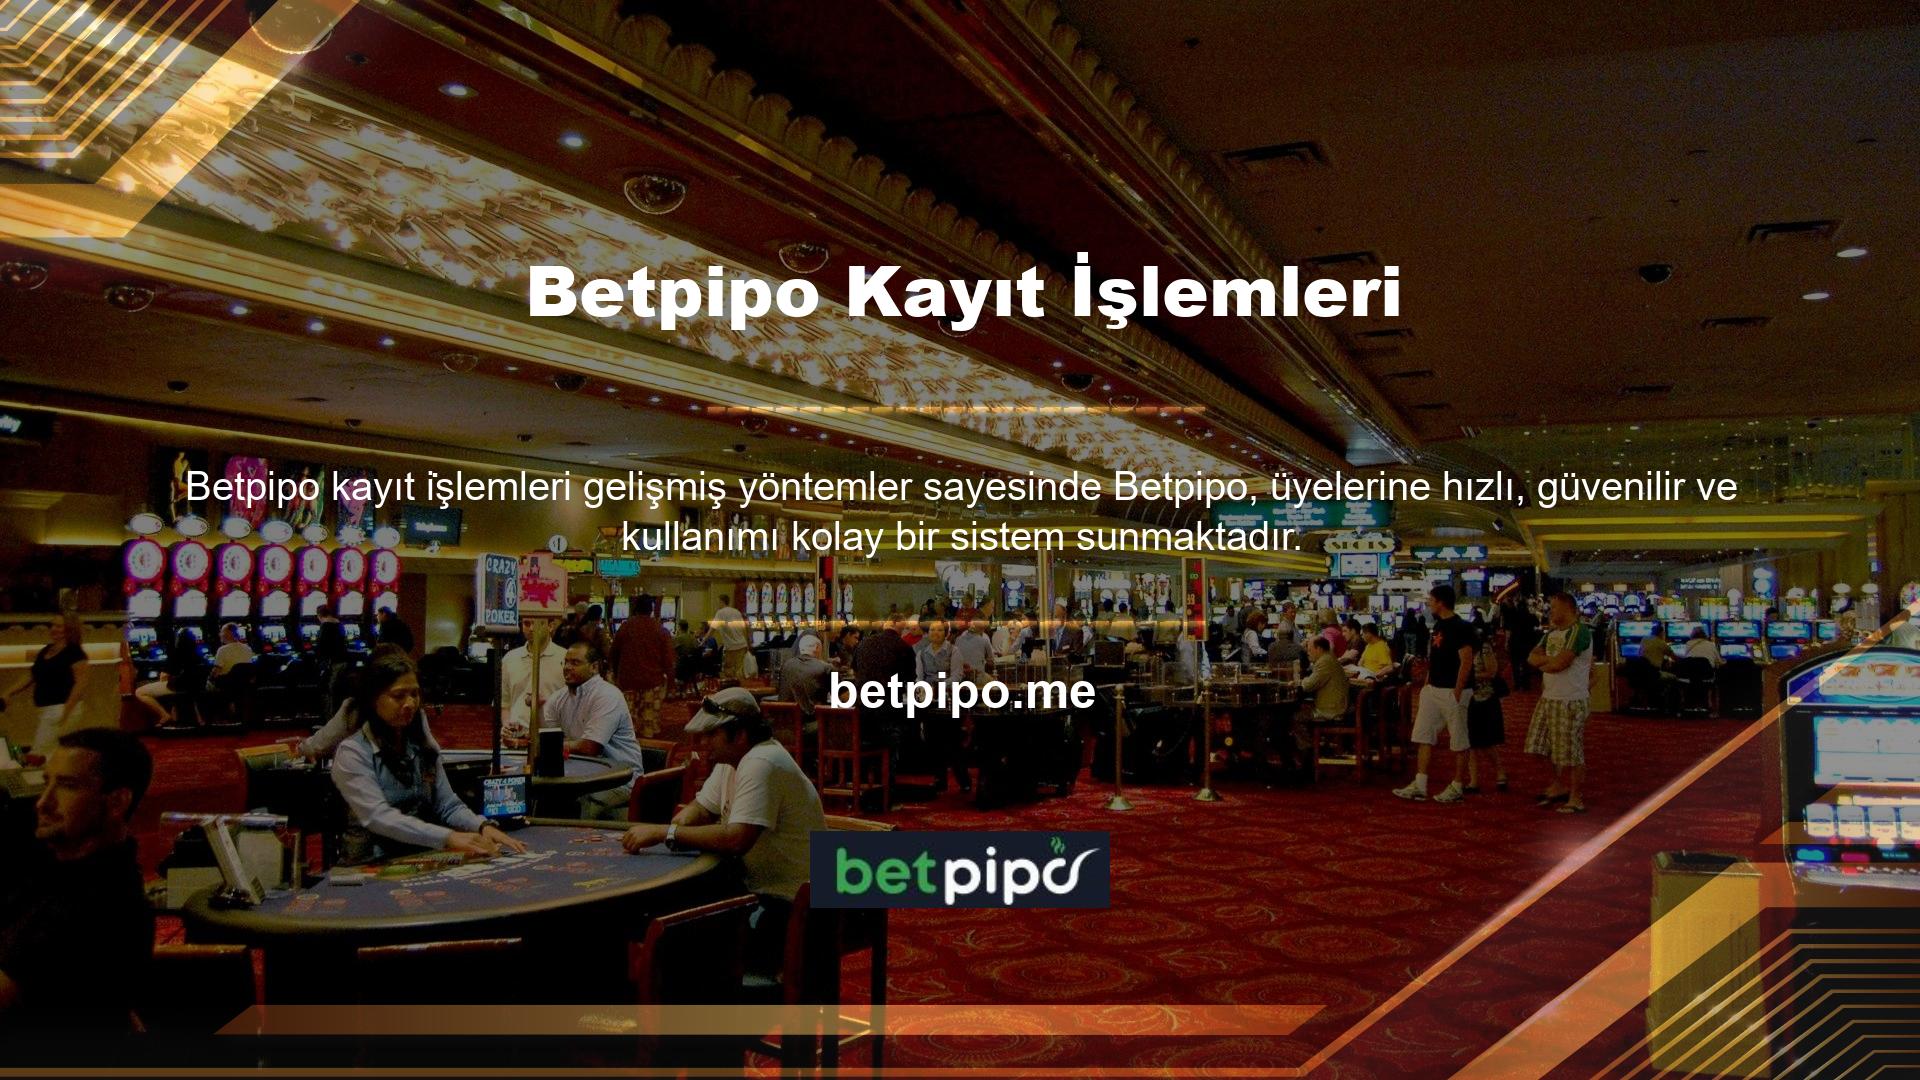 Betpipo, kullanıcıların cep telefonları, tabletler ve bilgisayarlar da dahil olmak üzere internete bağlı herhangi bir cihazdan aynı kalitede içeriğe erişmesine olanak tanır